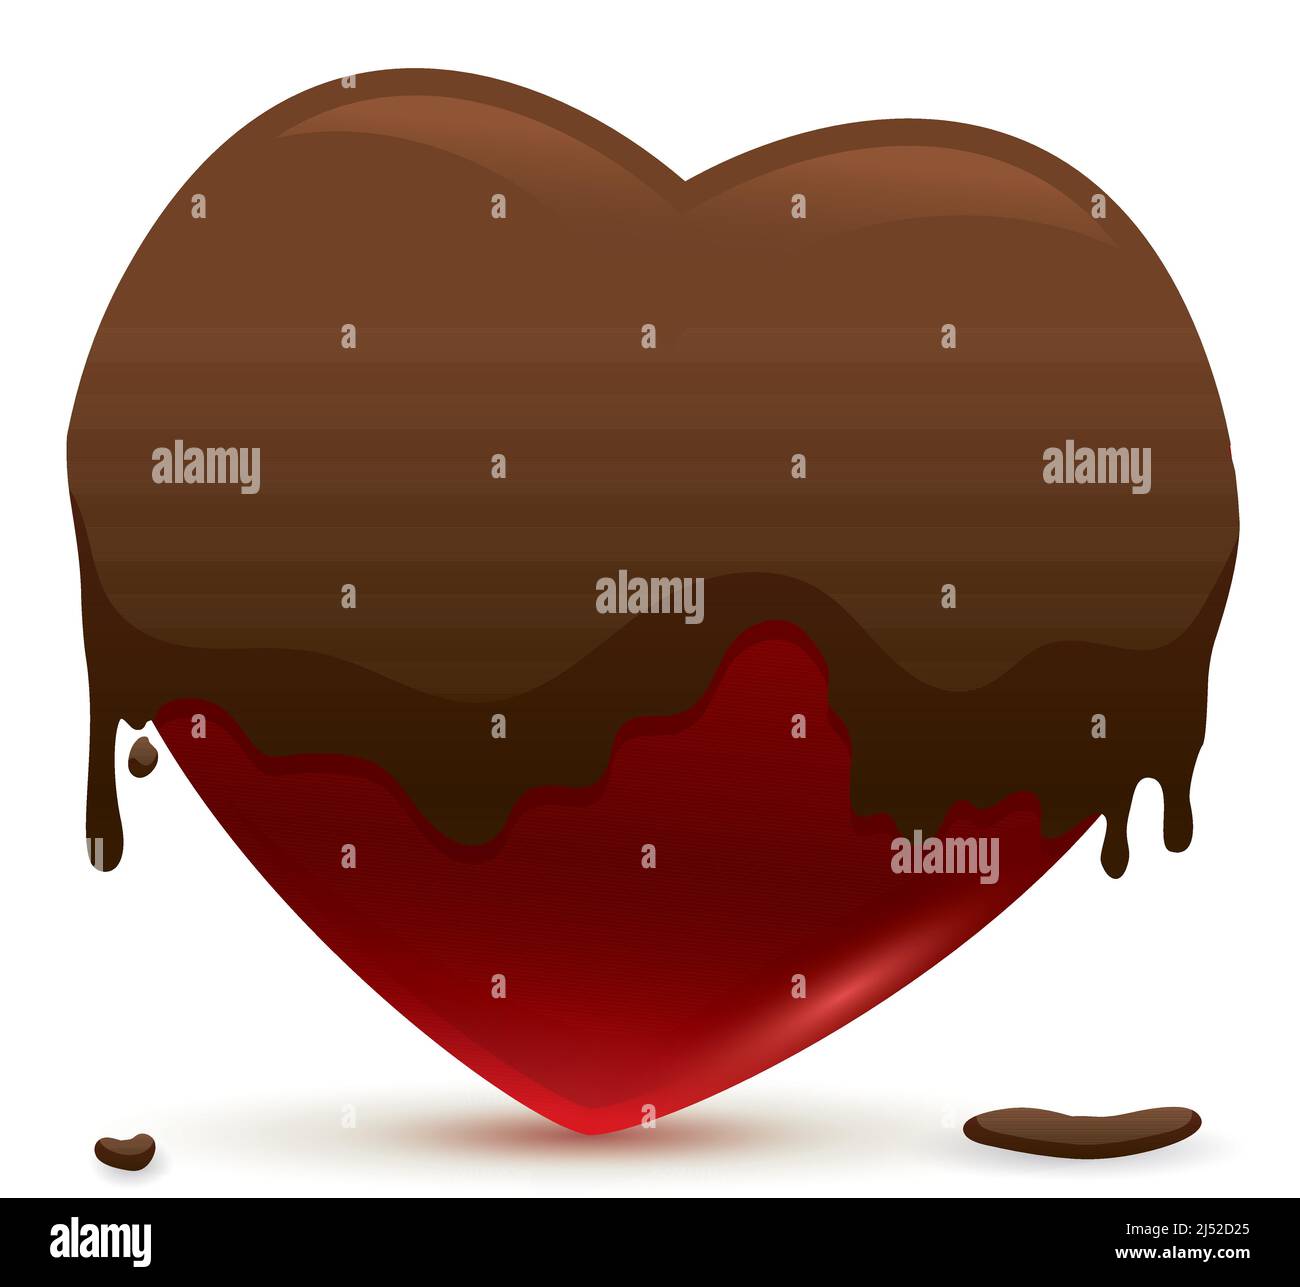 Délicieux signe en forme de coeur recouvert d'un bain de chocolat sur fond blanc. Illustration de Vecteur